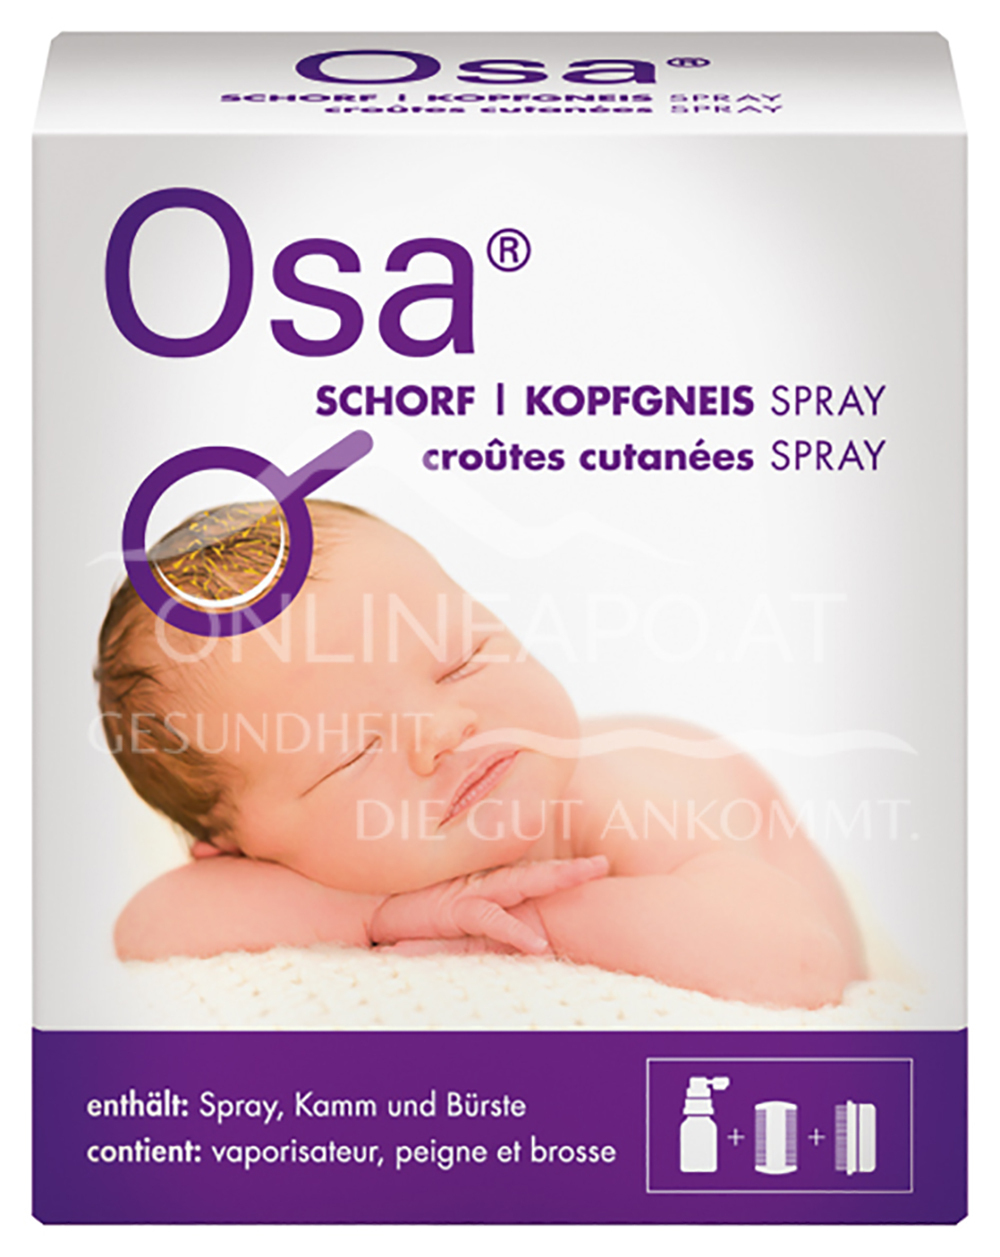 Osa® Schorf/Kopfgneis Spray